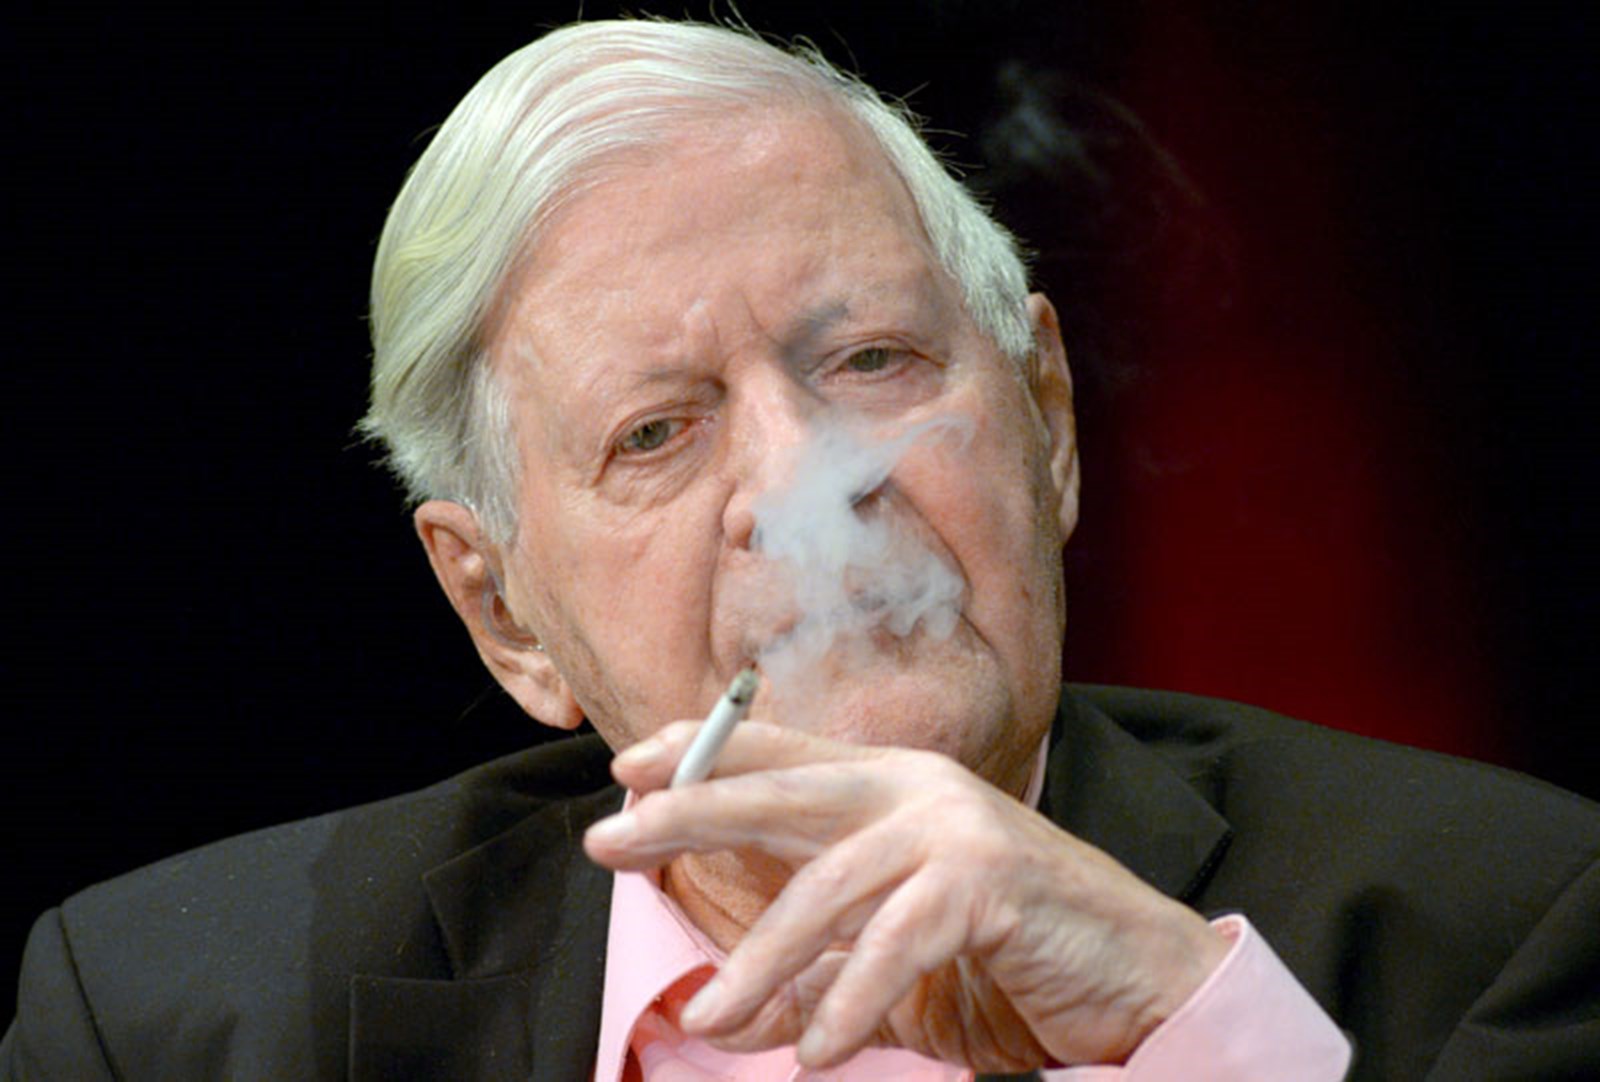 Helmut Schmidt ist auf seiner Münze Nichtraucher - Politik